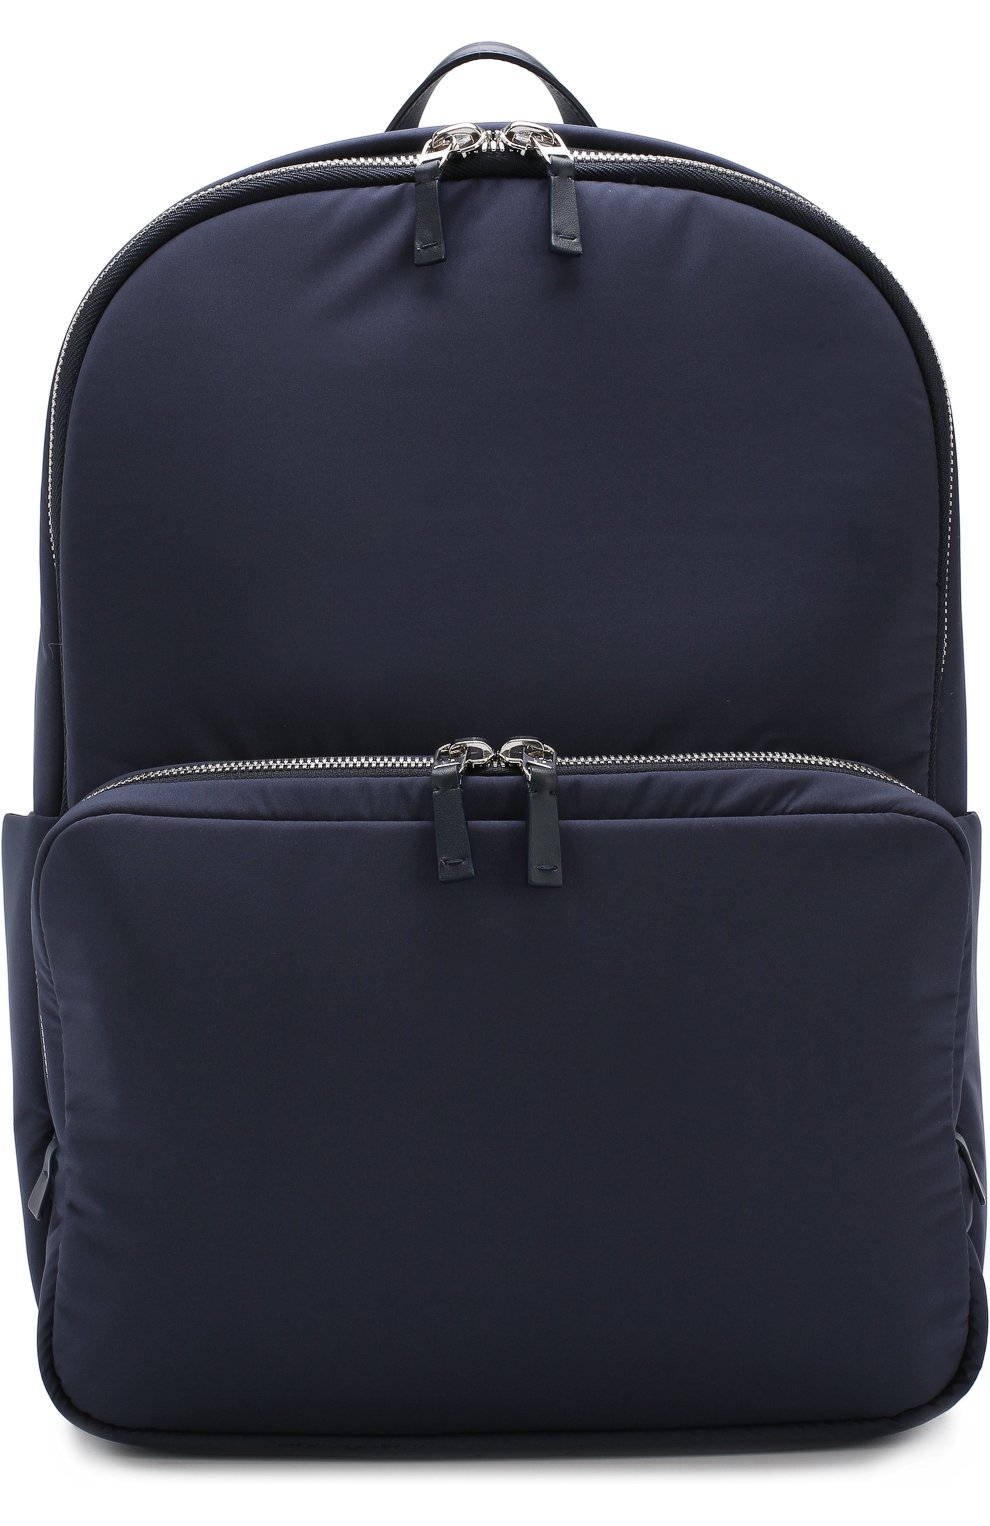 Мужской темно-синий текстильный рюкзак voyager city с кожаной отделкой .